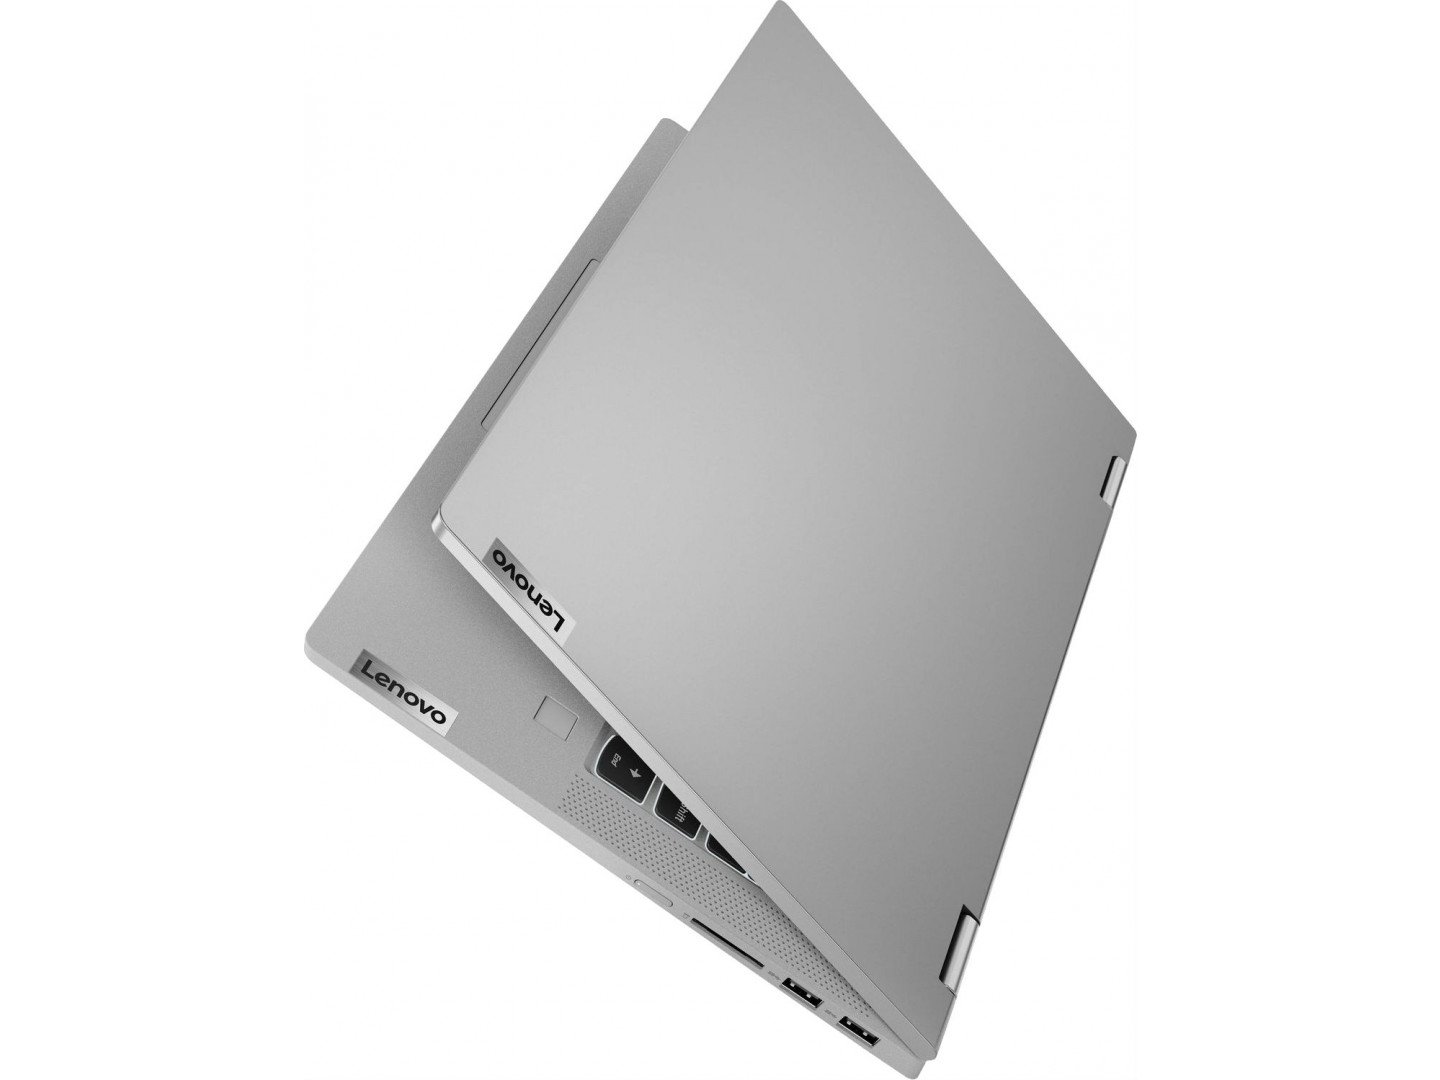 Купить Ноутбук Lenovo Flex 5 14IIL05 Platinum Grey (81X100NMRA) - ITMag